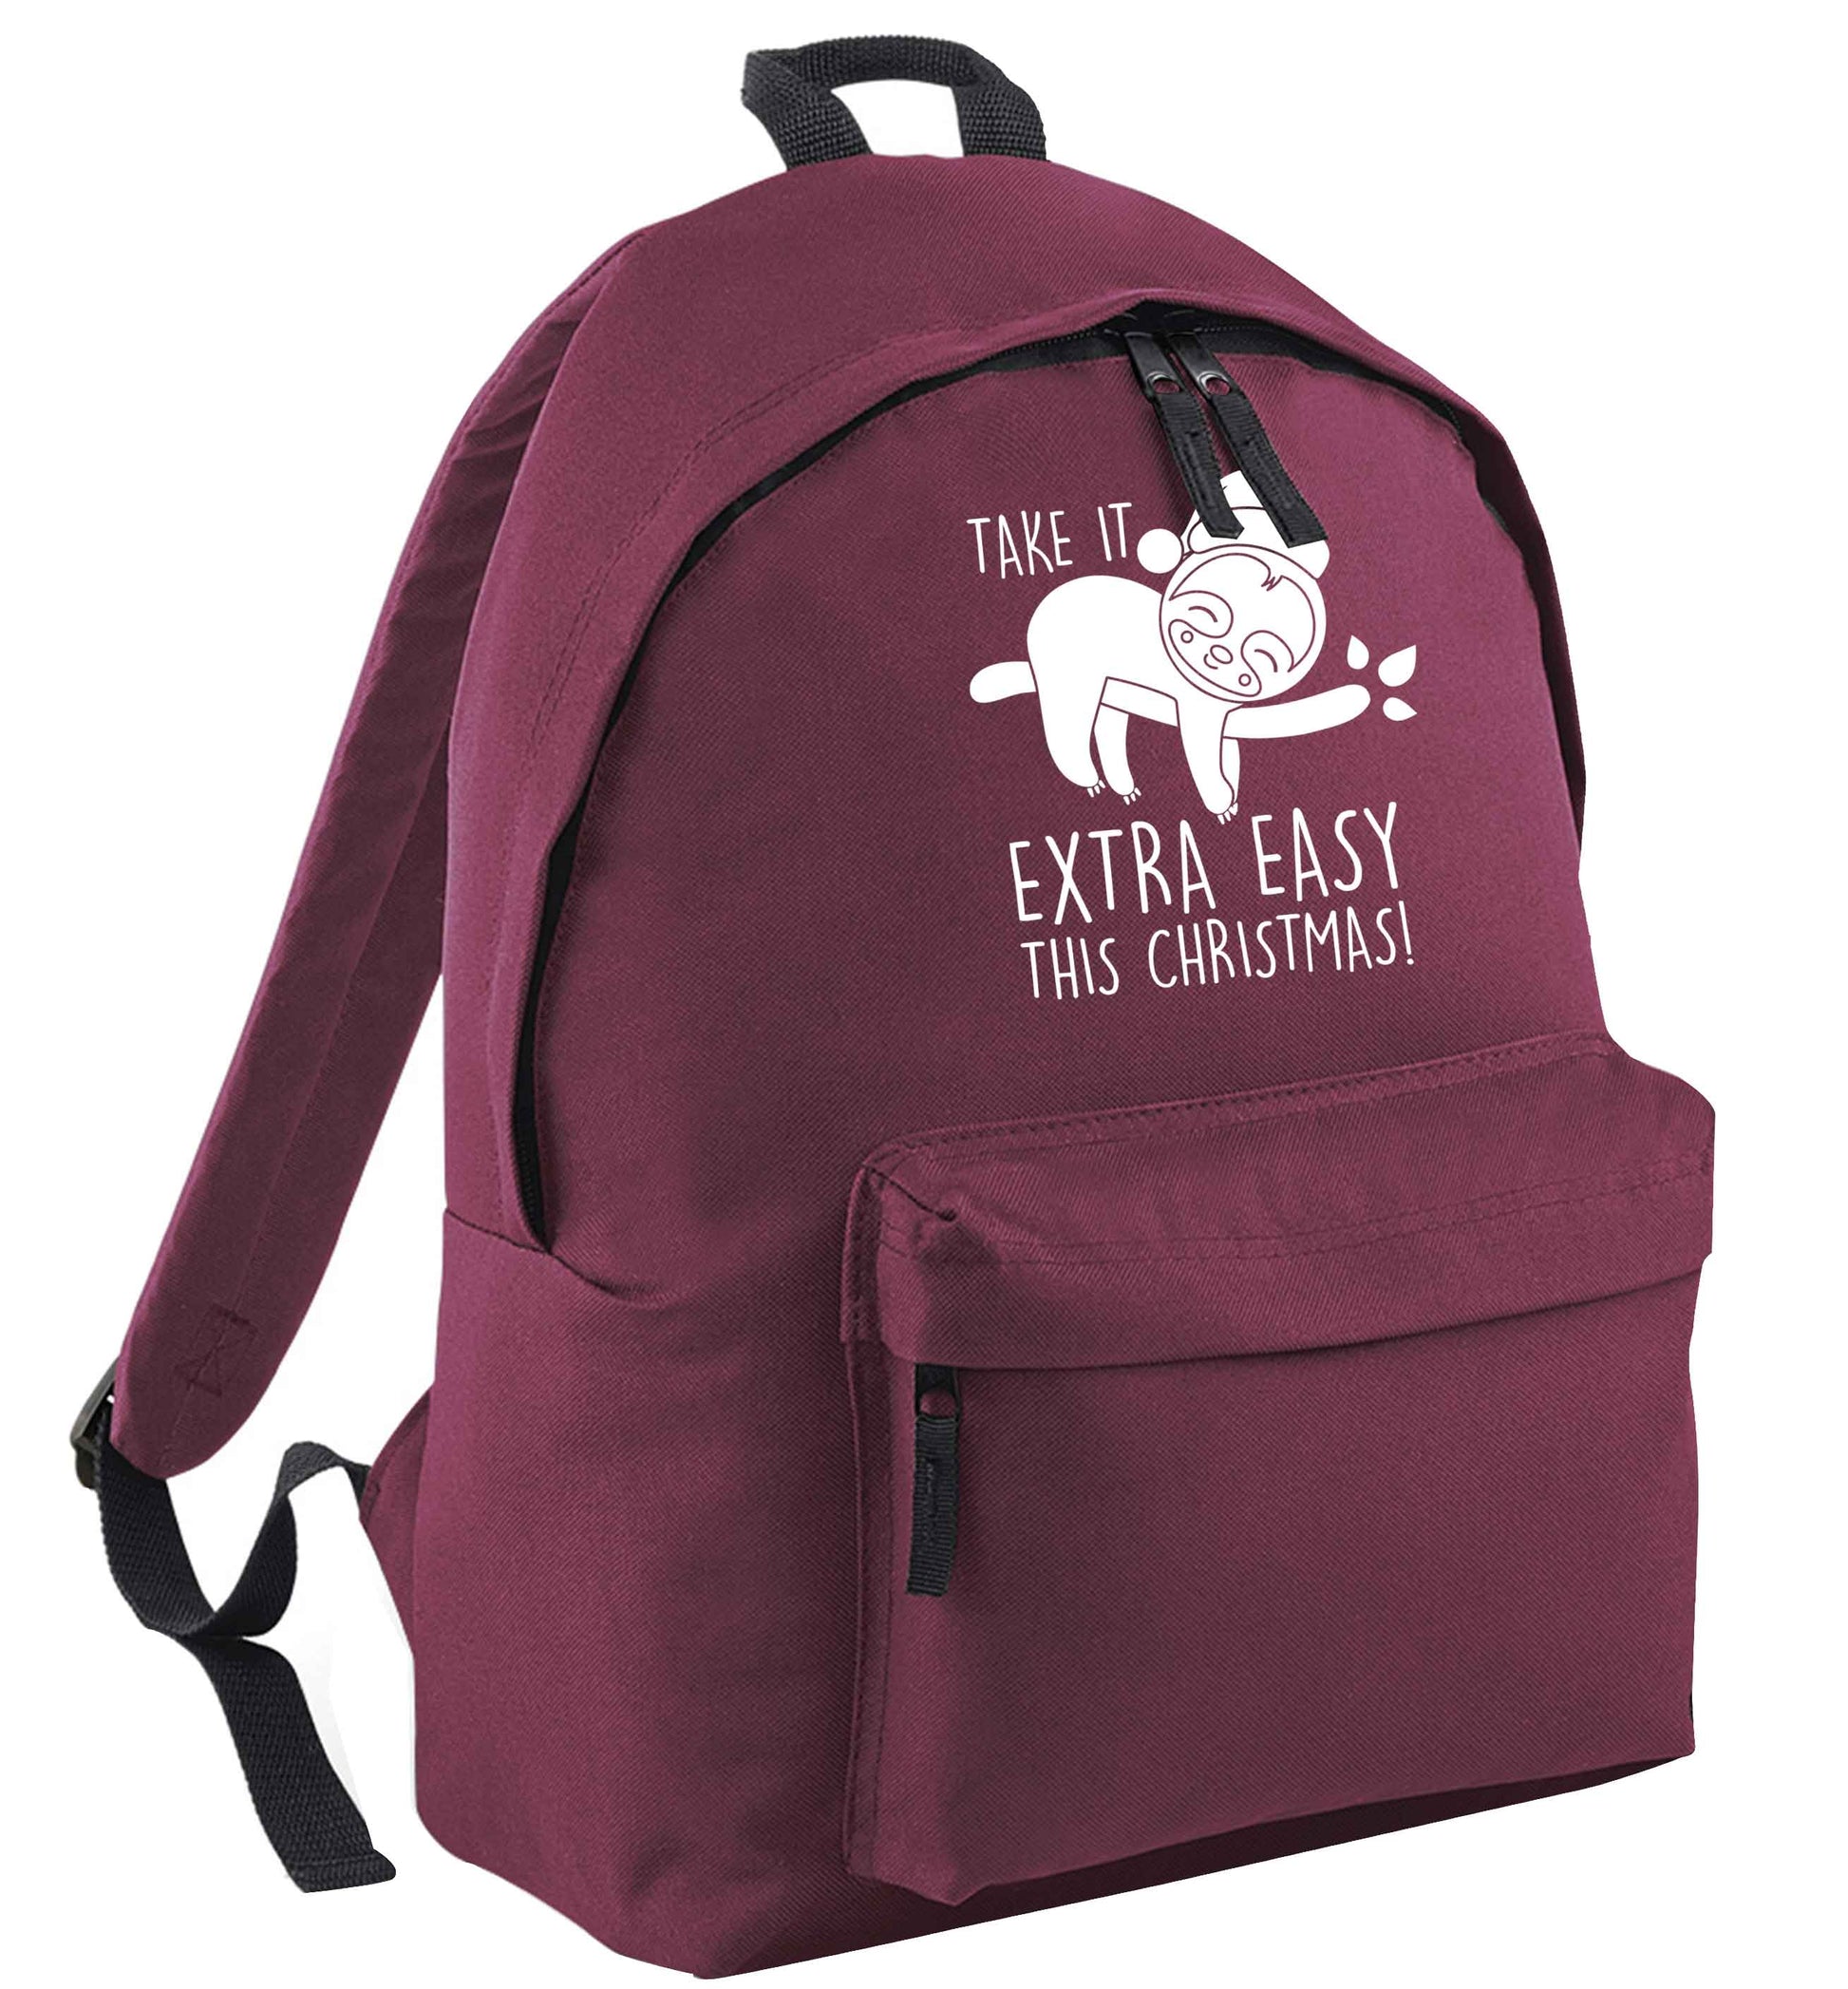 Slow Ho Ho maroon adults backpack